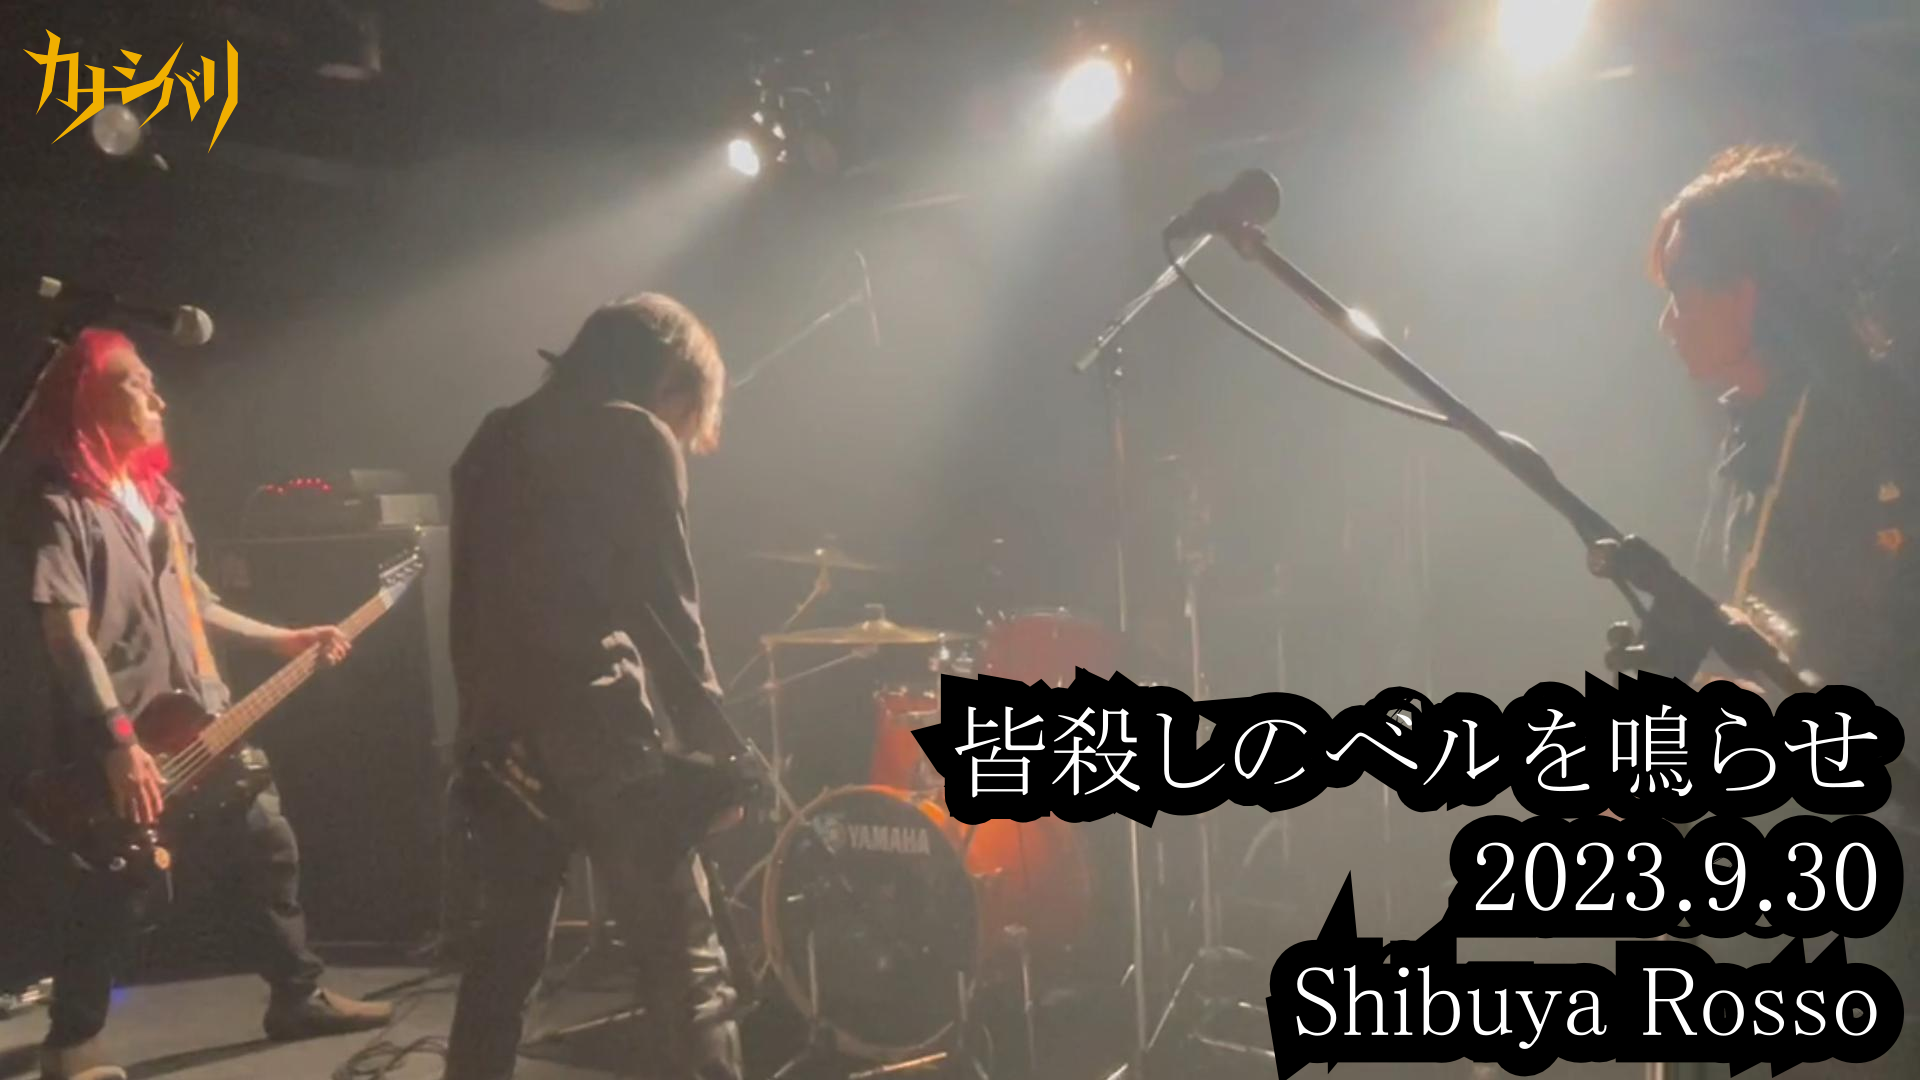 皆殺しのベルを鳴らせ - Live at Shibuya Rosso / 2023.9.30